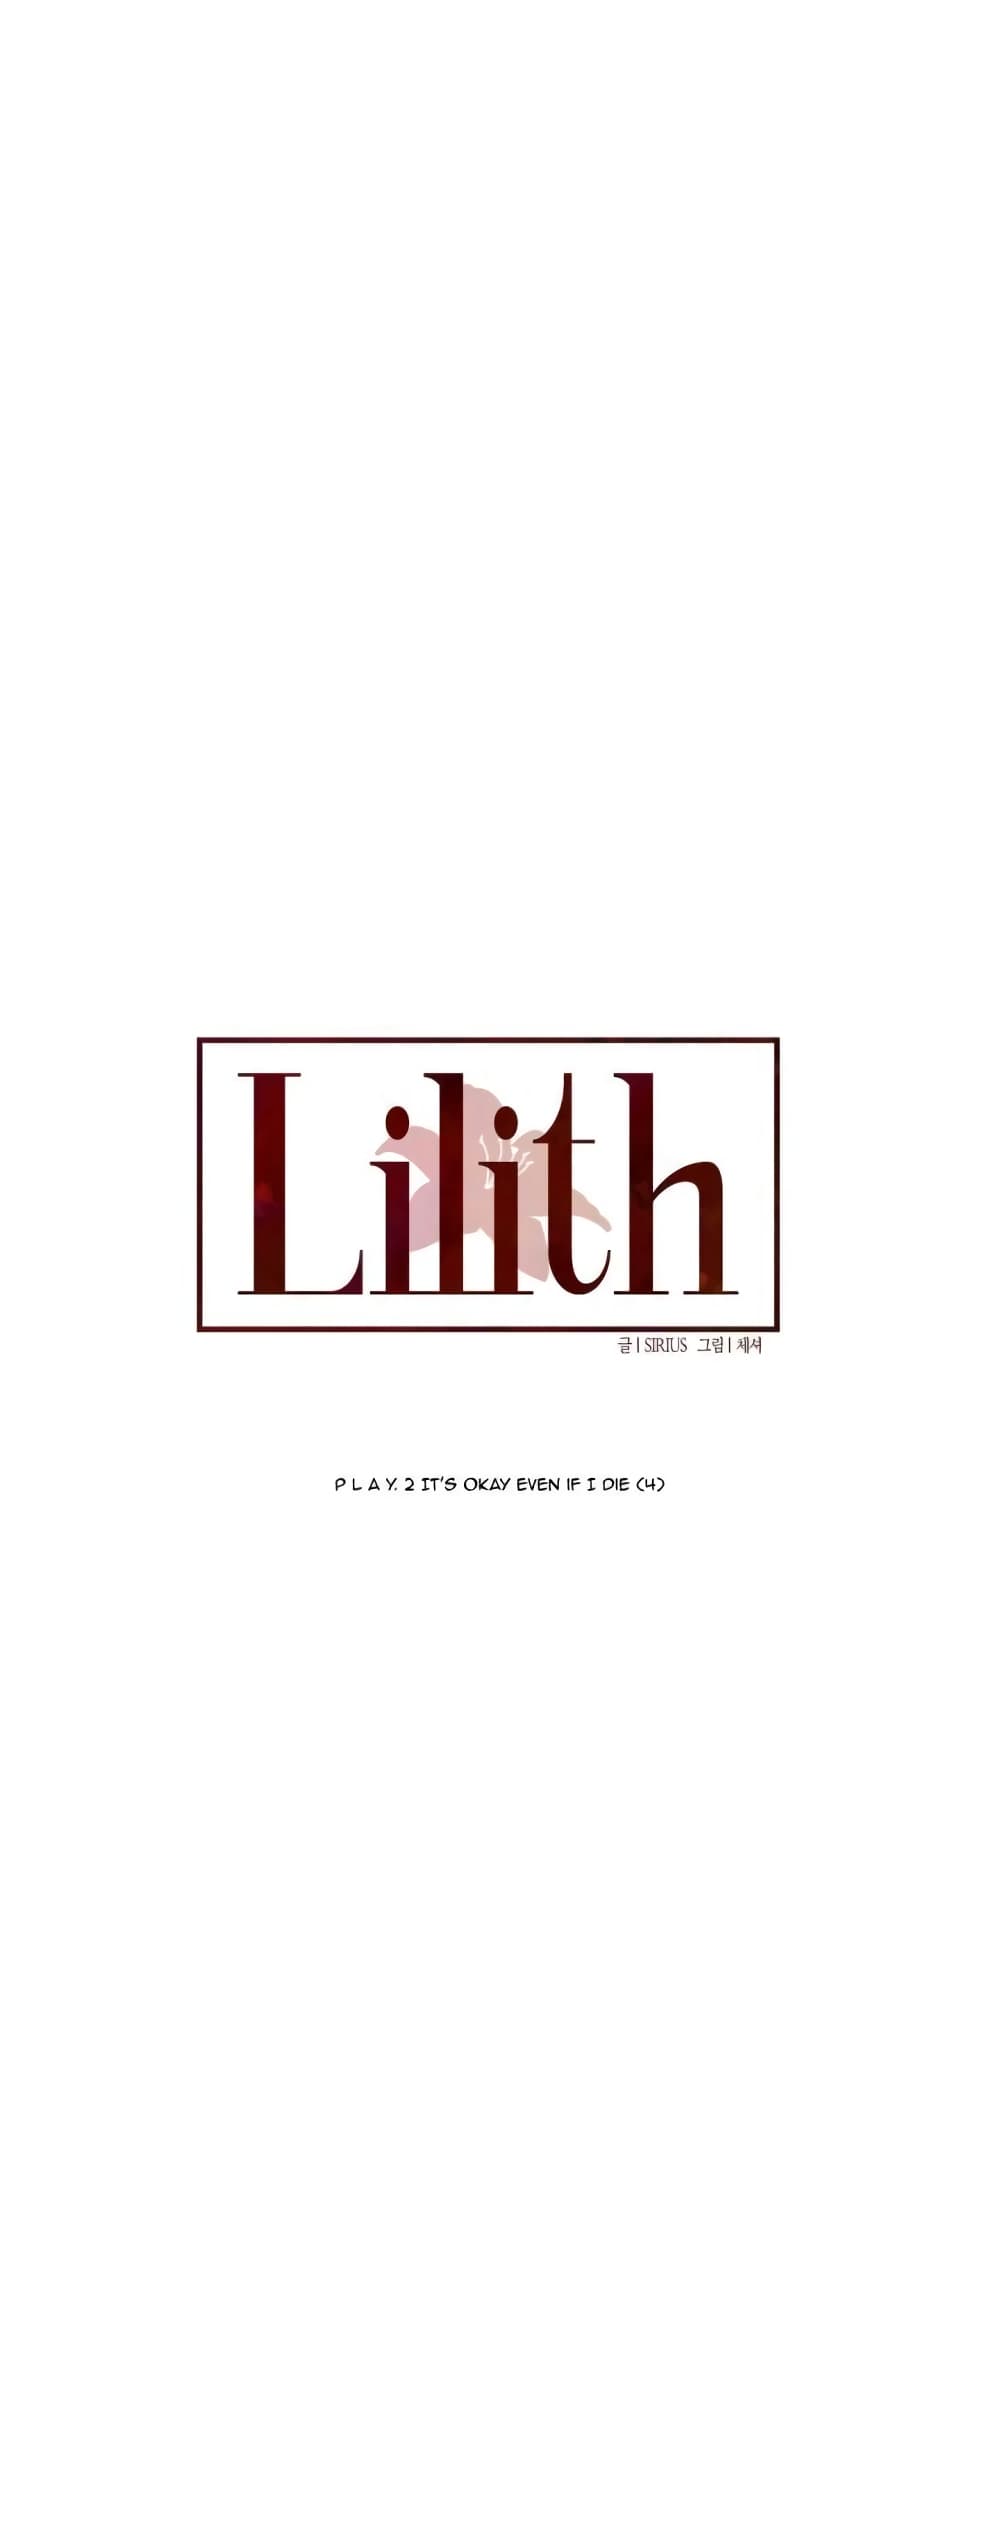 Lilith 12 11